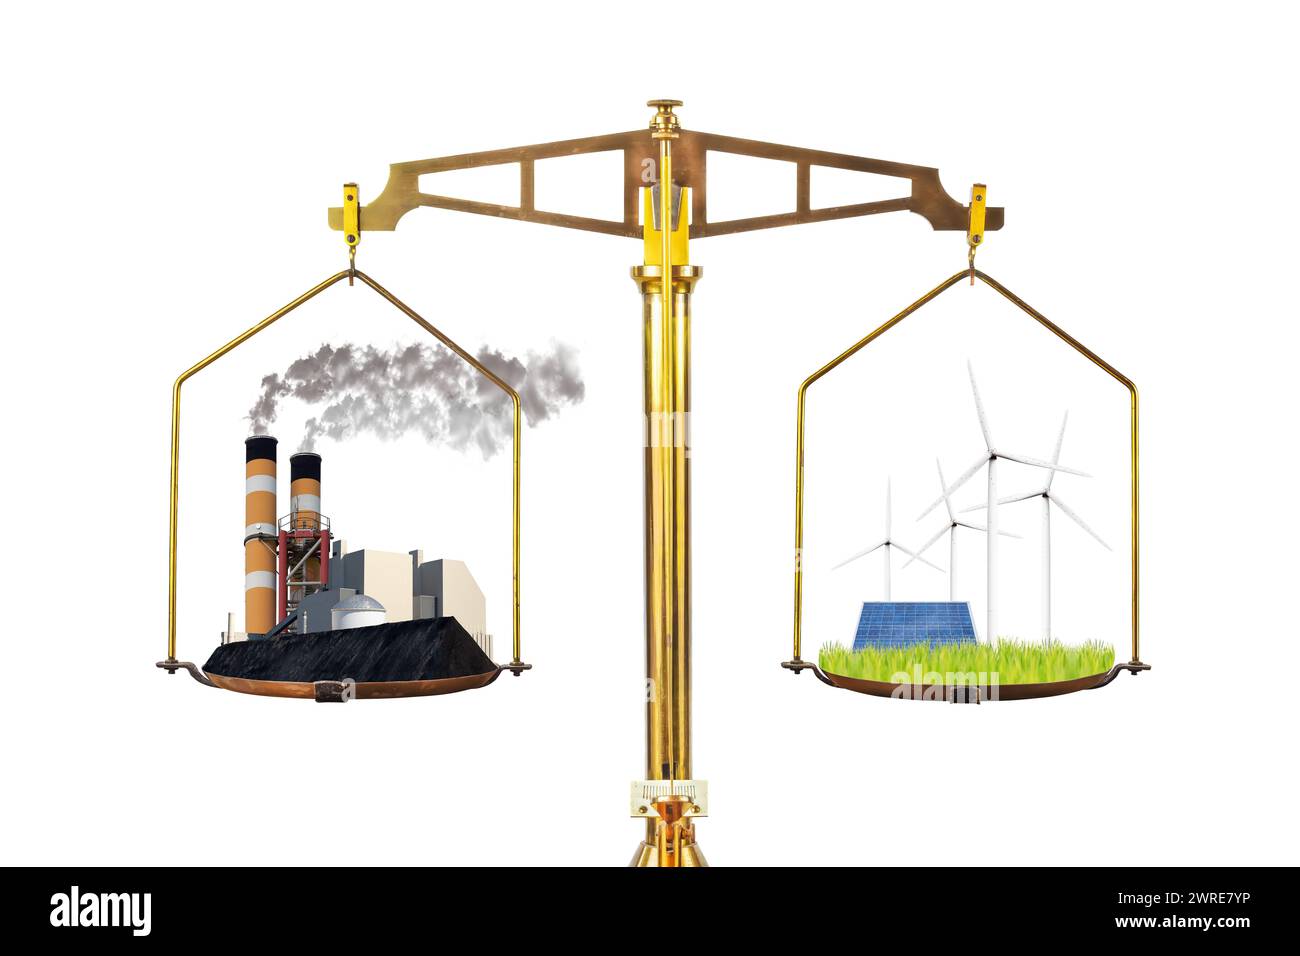 Concetto di fabbrica convenzionale di energia inquinante rispetto all'energia rinnovabile con turbine e pannelli solari su una scala di equilibrio Foto Stock